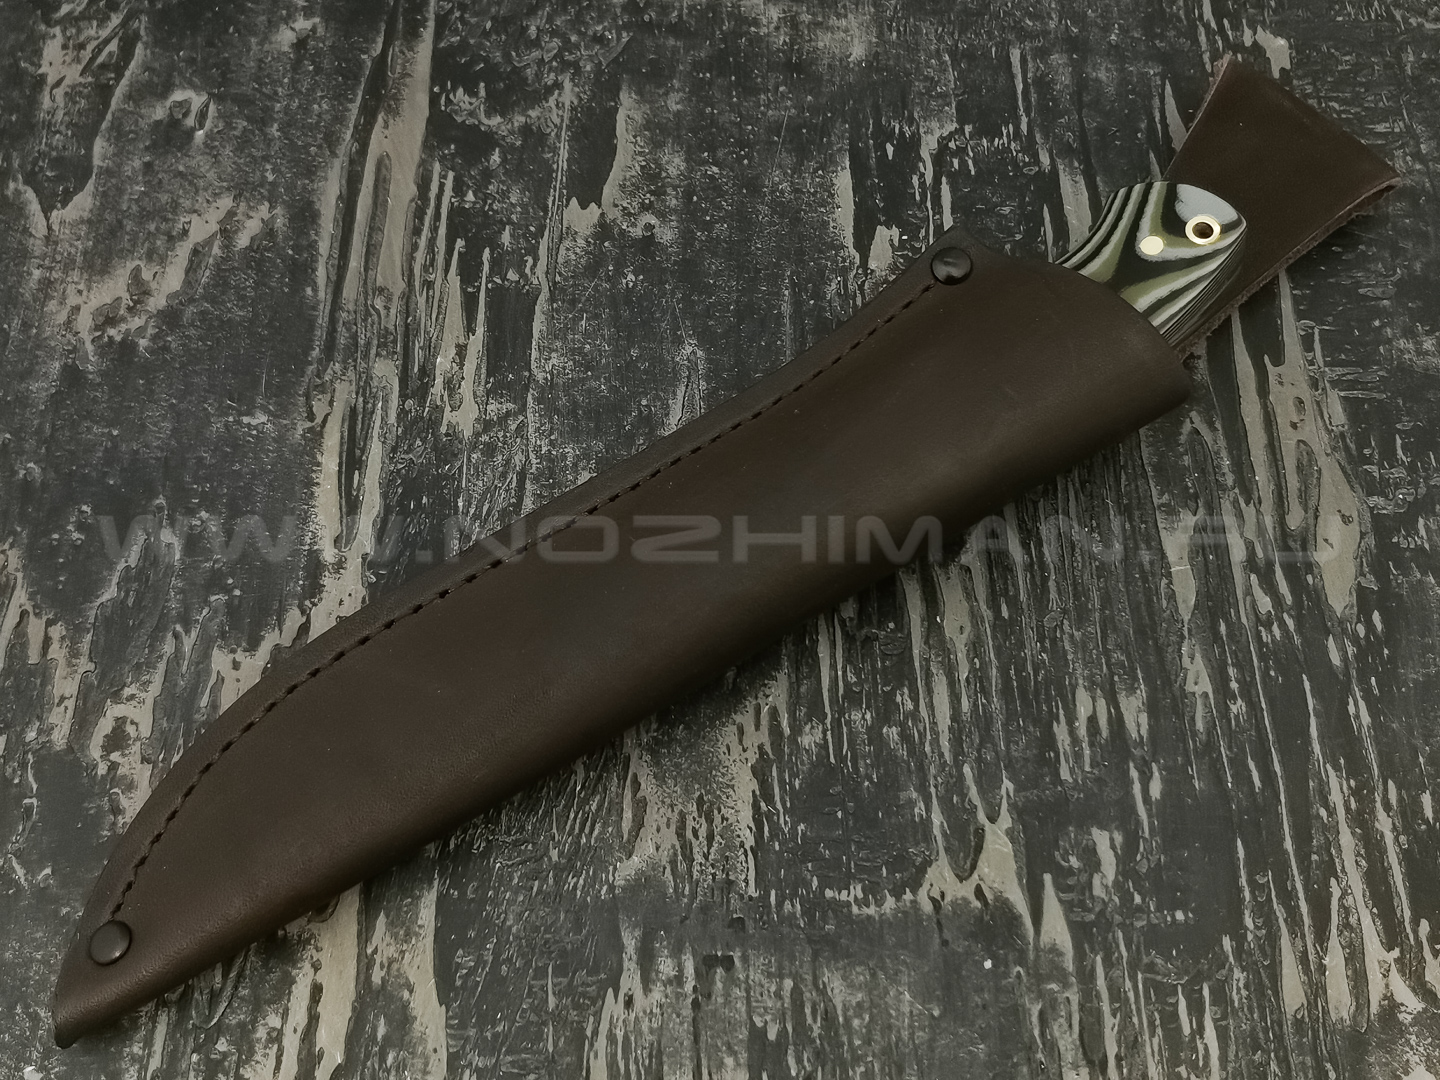 Нож "Рабочий" сталь Vanadis 10, рукоять G10 black-grey-olive (Наследие)